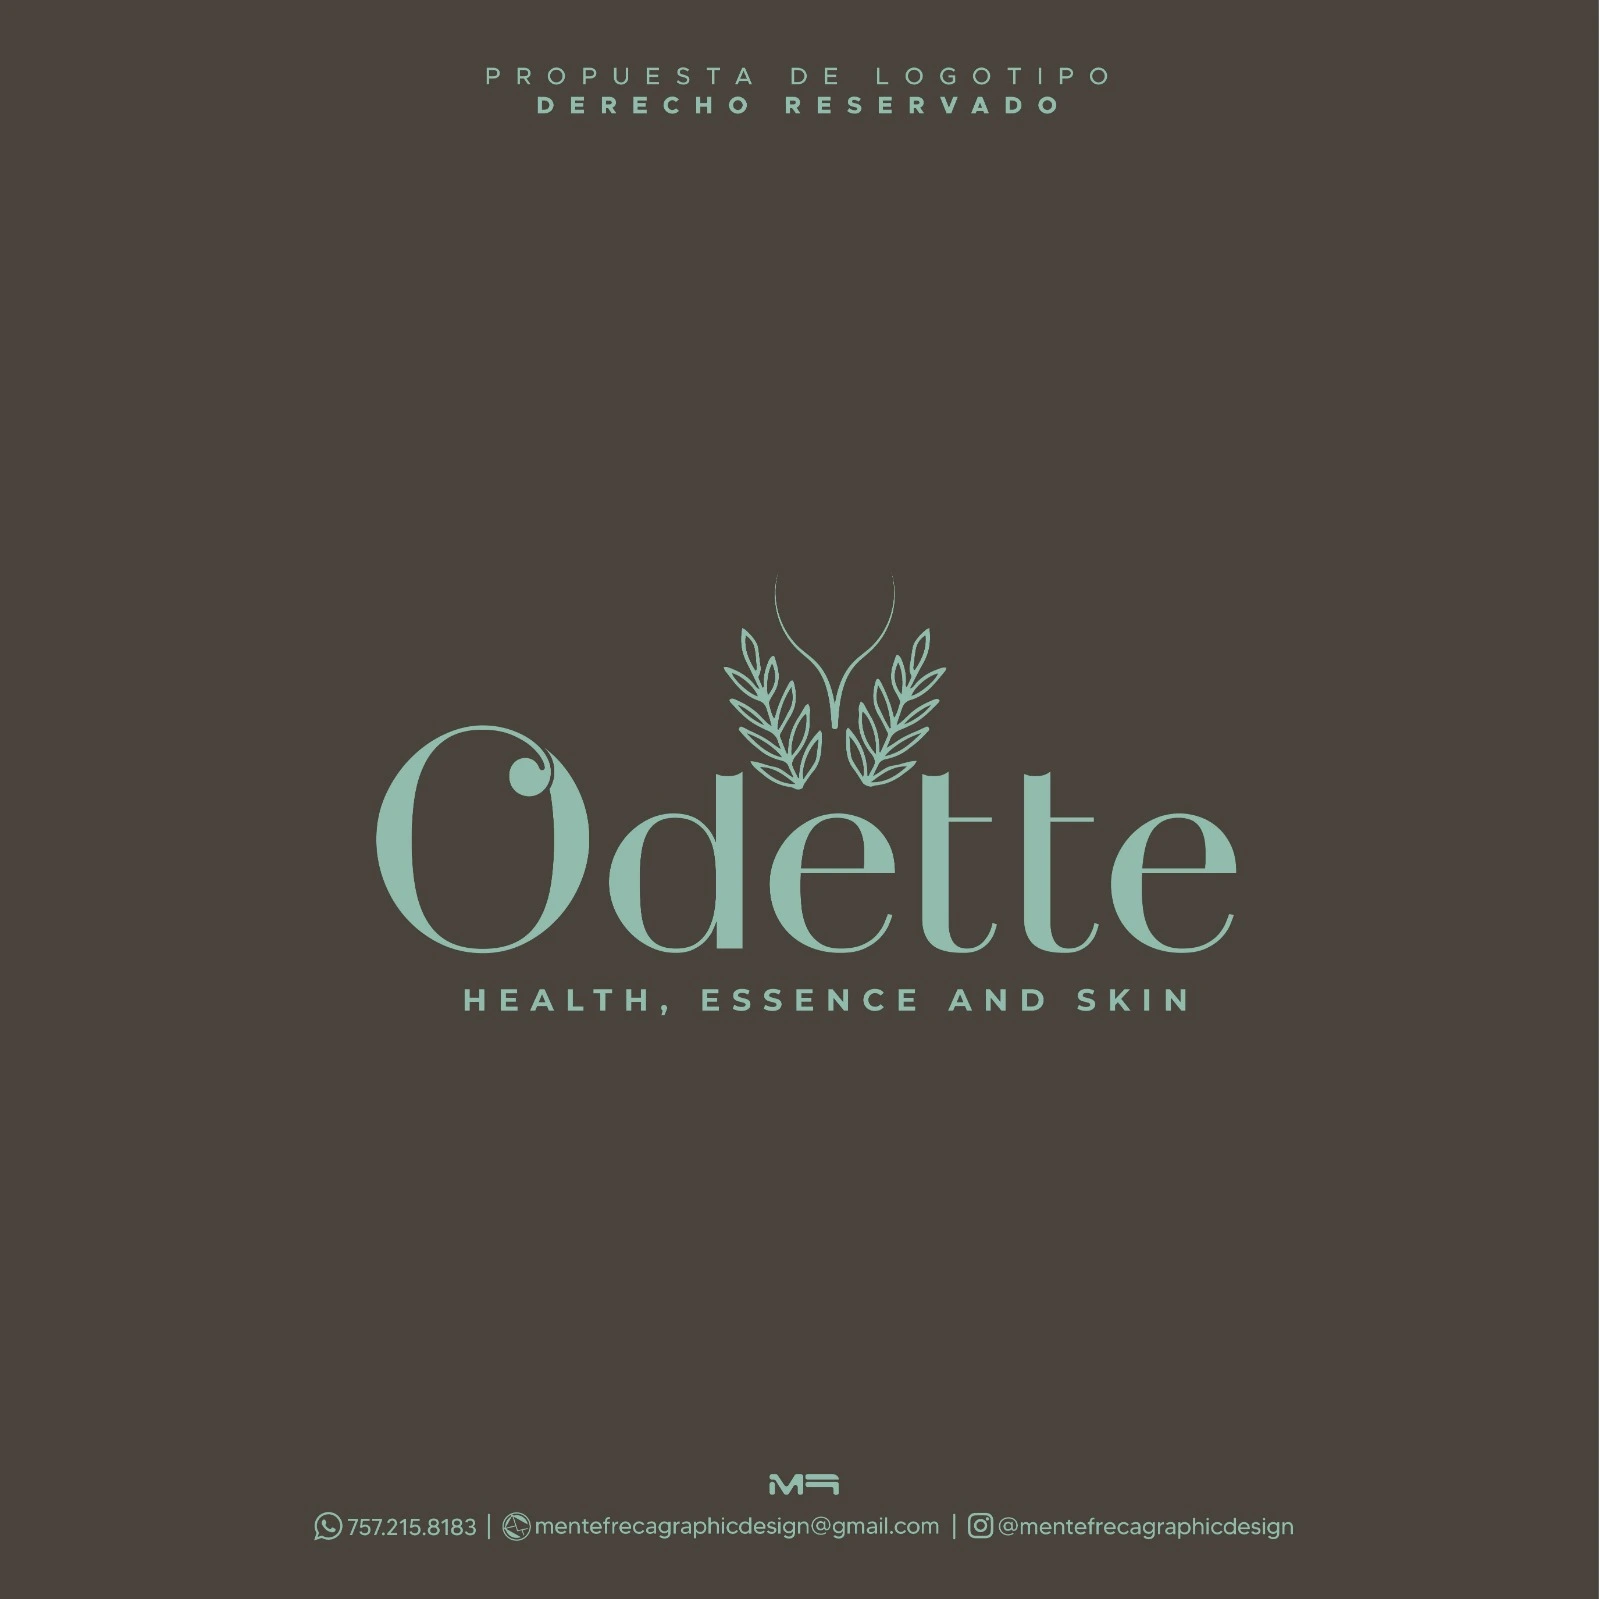 Odette Logo with Dark Background